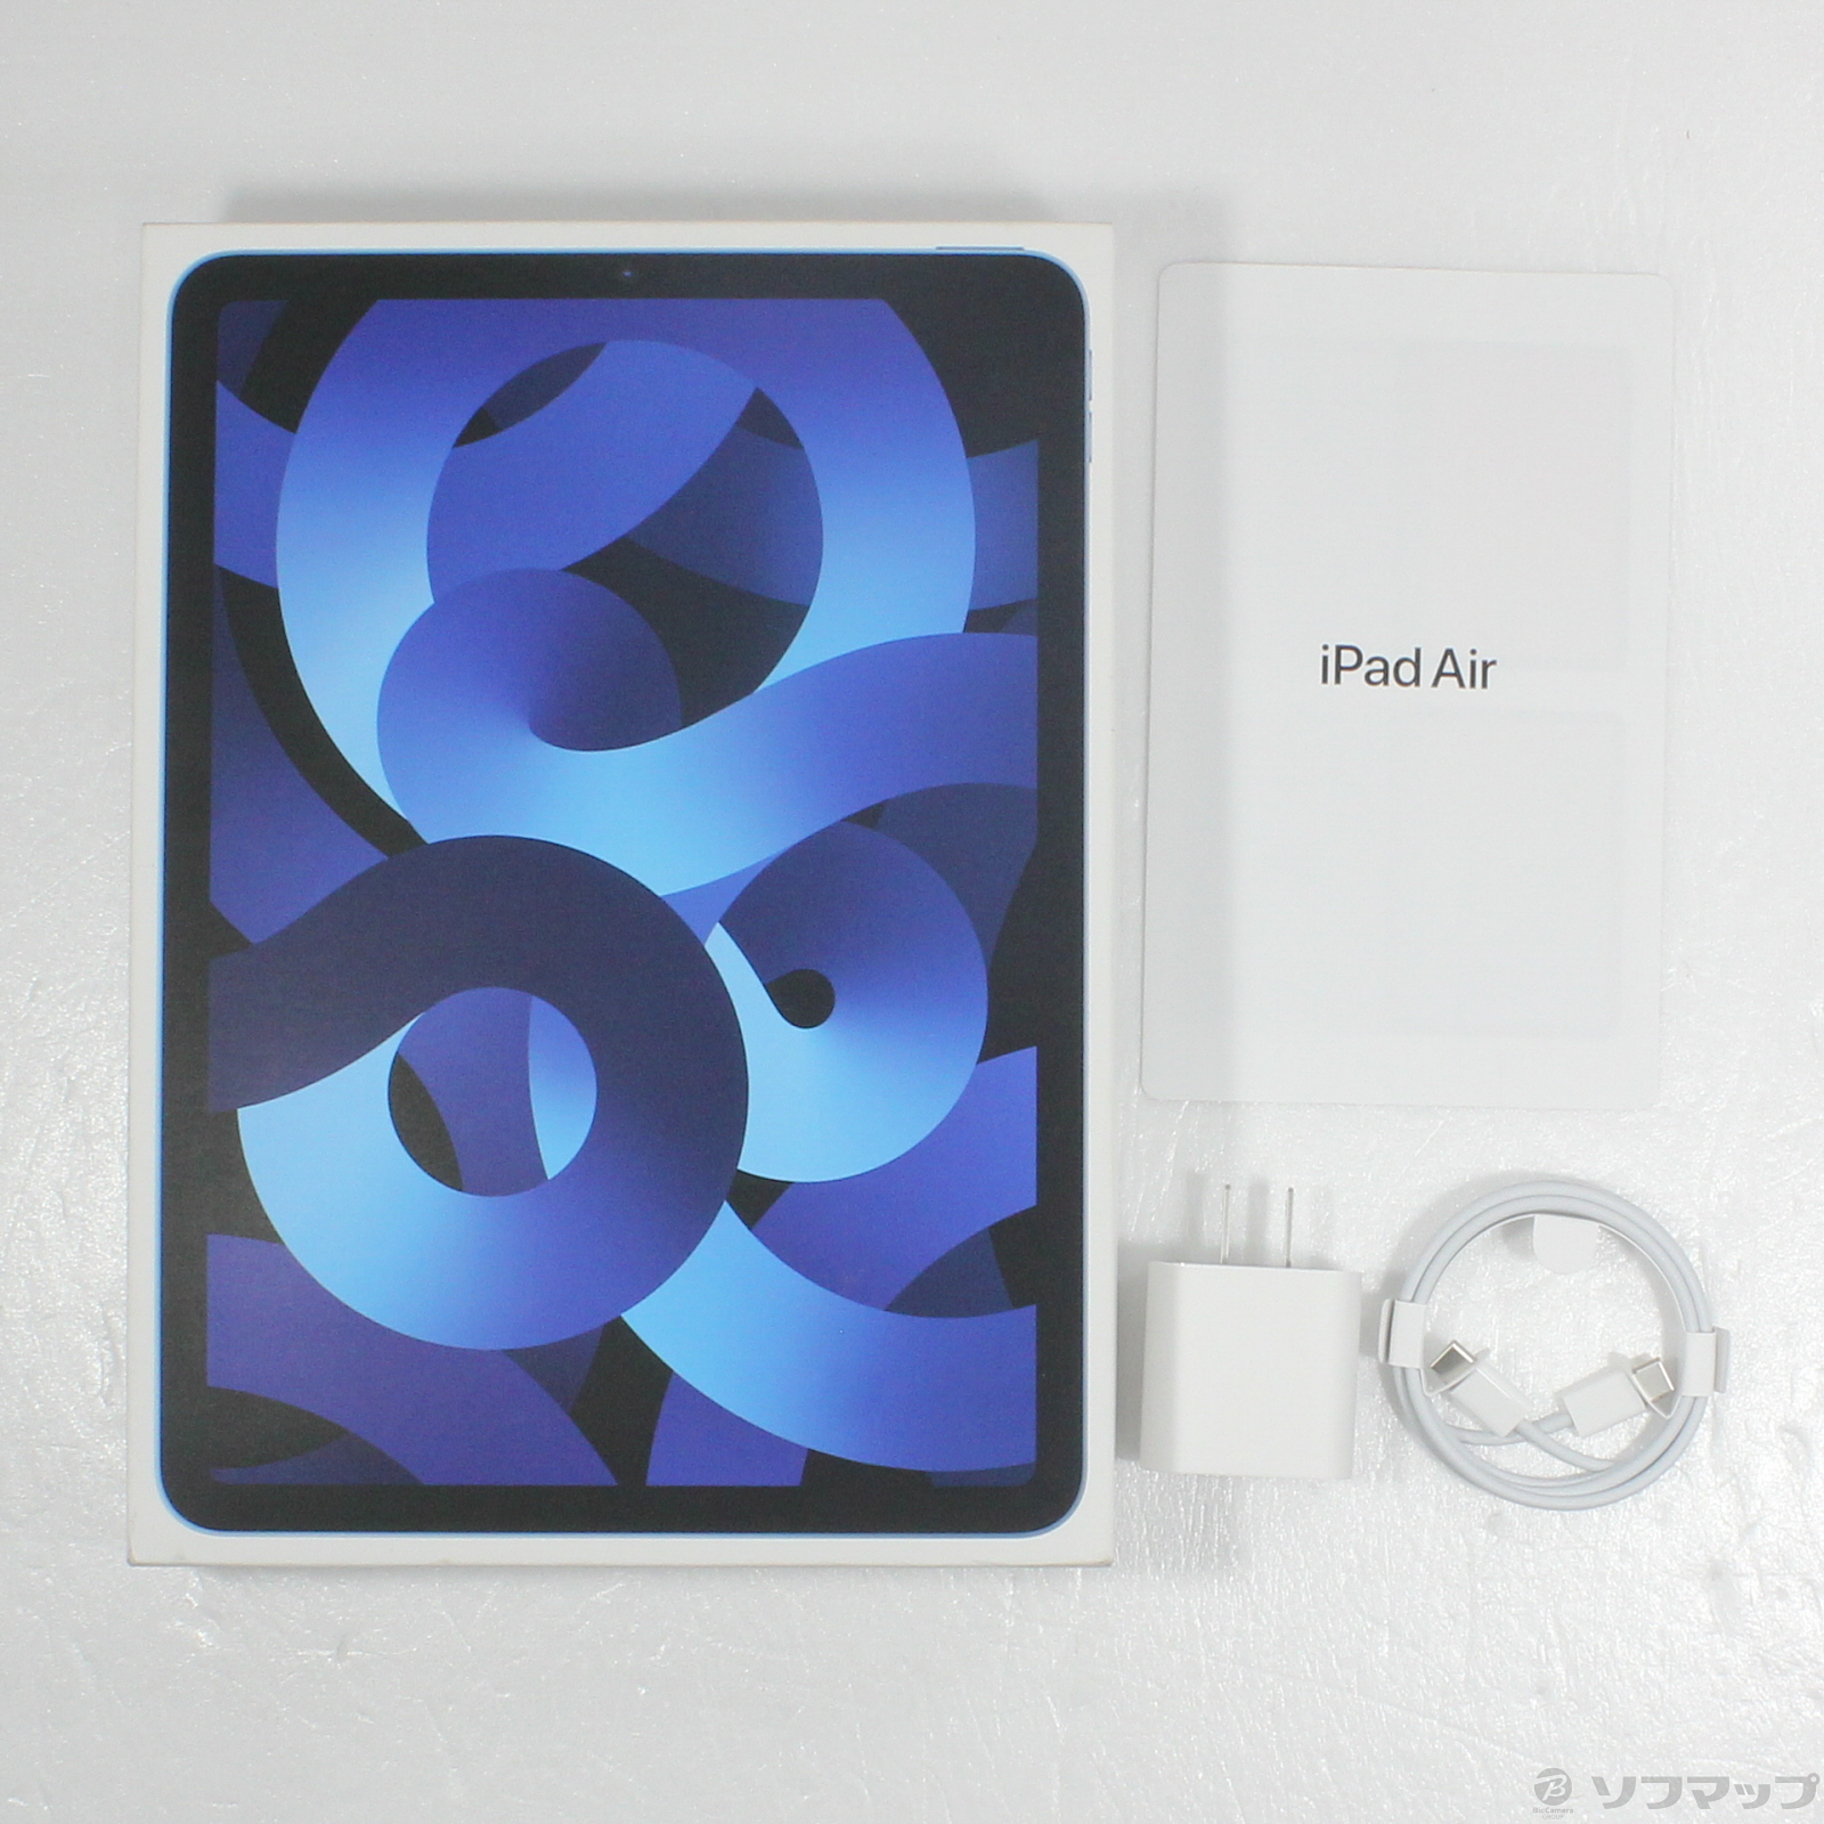 【買い得】iPad Air 5th 64GB ブルー WiFi iPad本体